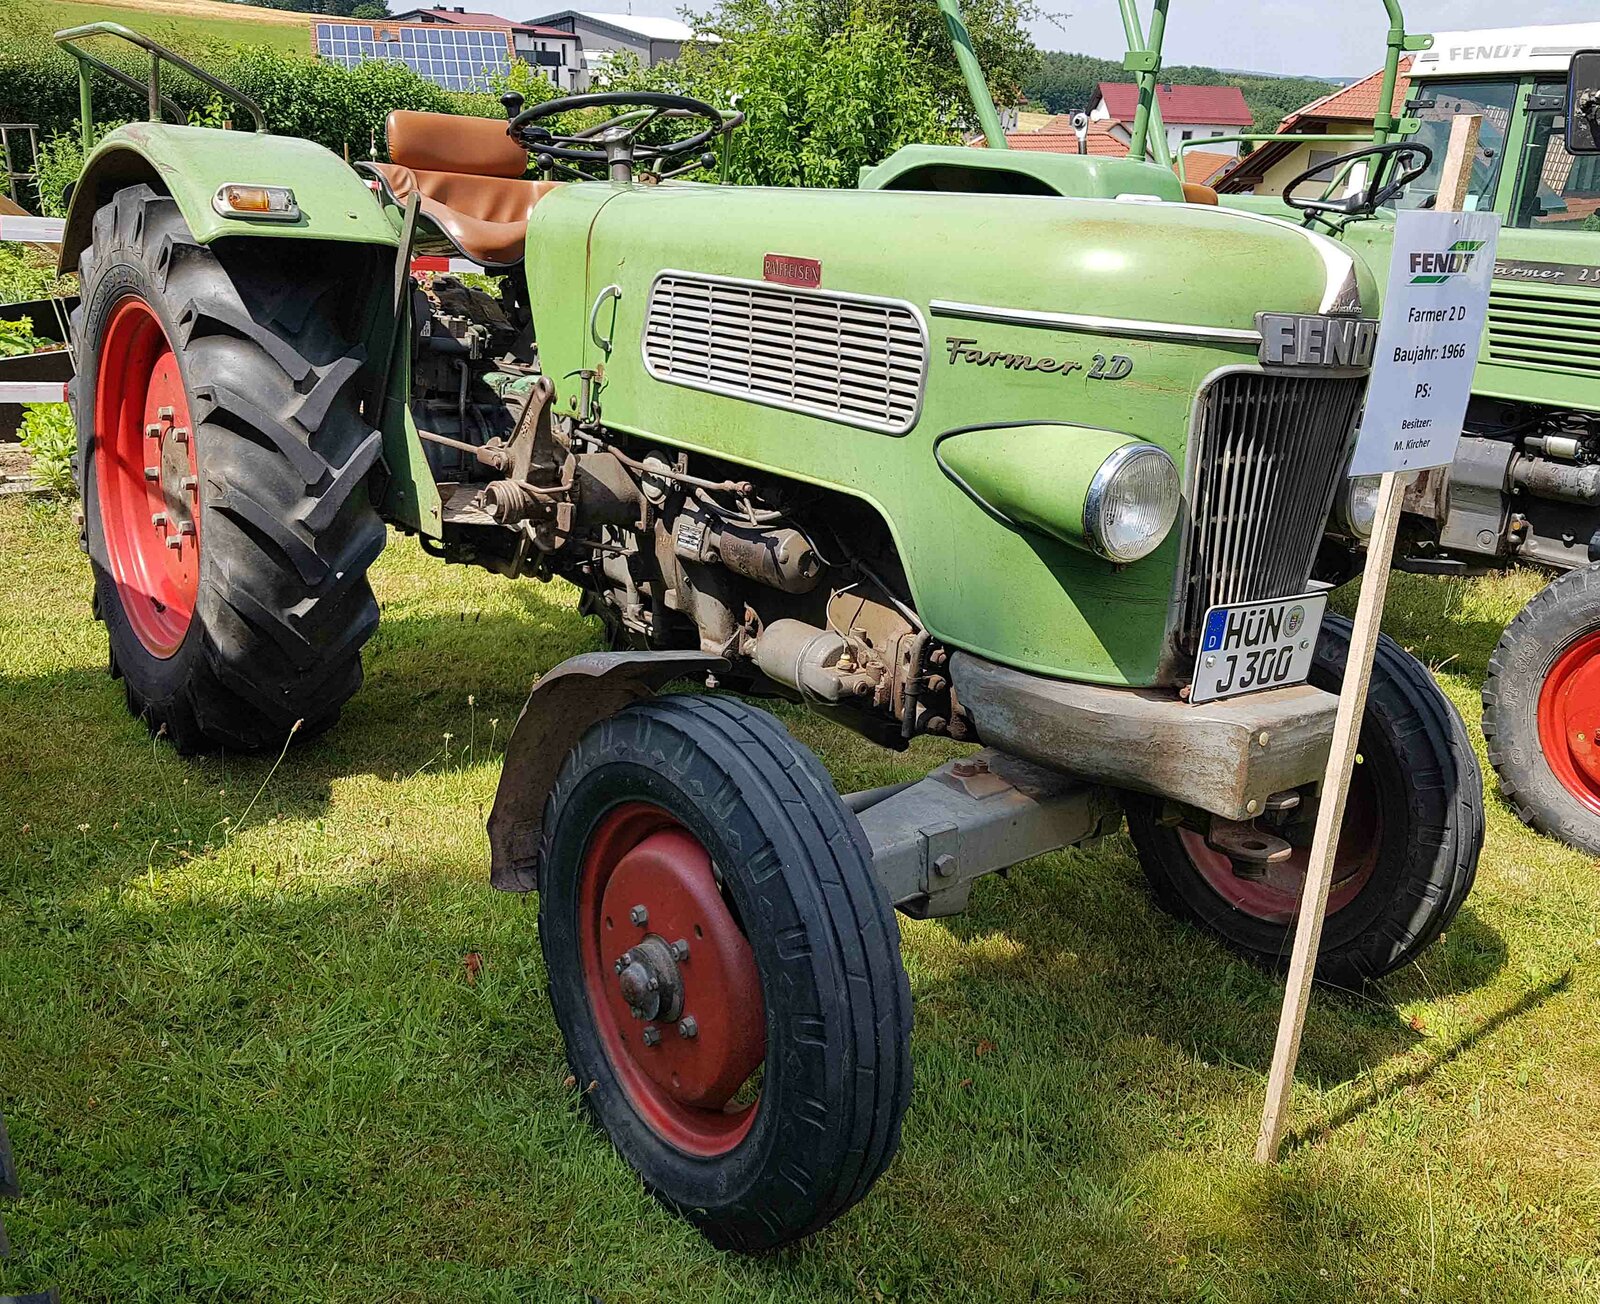 =Fendt Farmer 2D, Bj. 1966, steht im Juni 2023 in Hünfeld-Dammersbach. Die Leistung seines Traktors ist dem Besitzer scheinbar unbekannt.